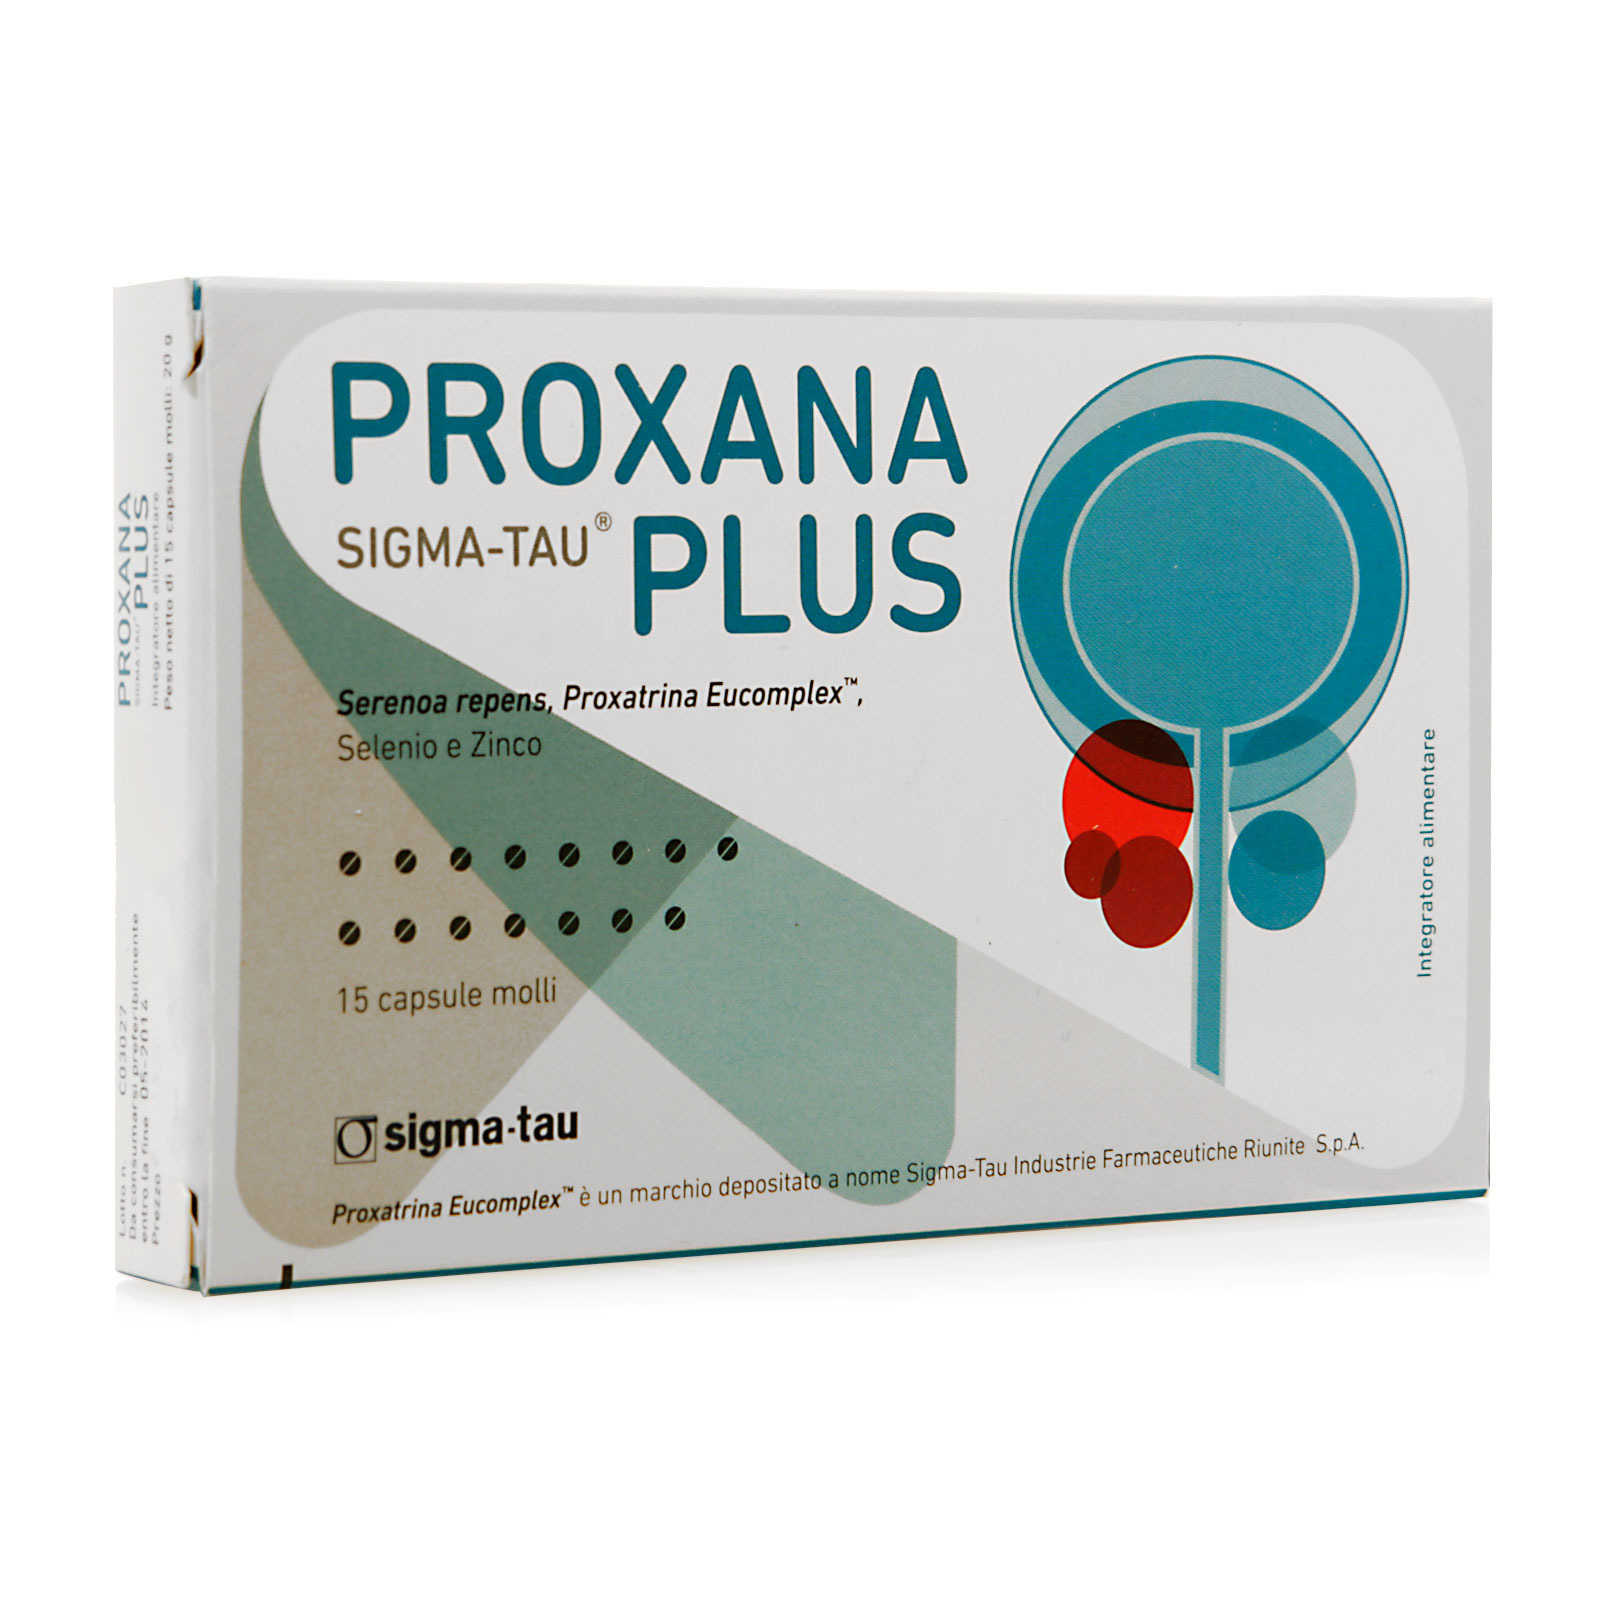  - Proxana Plus